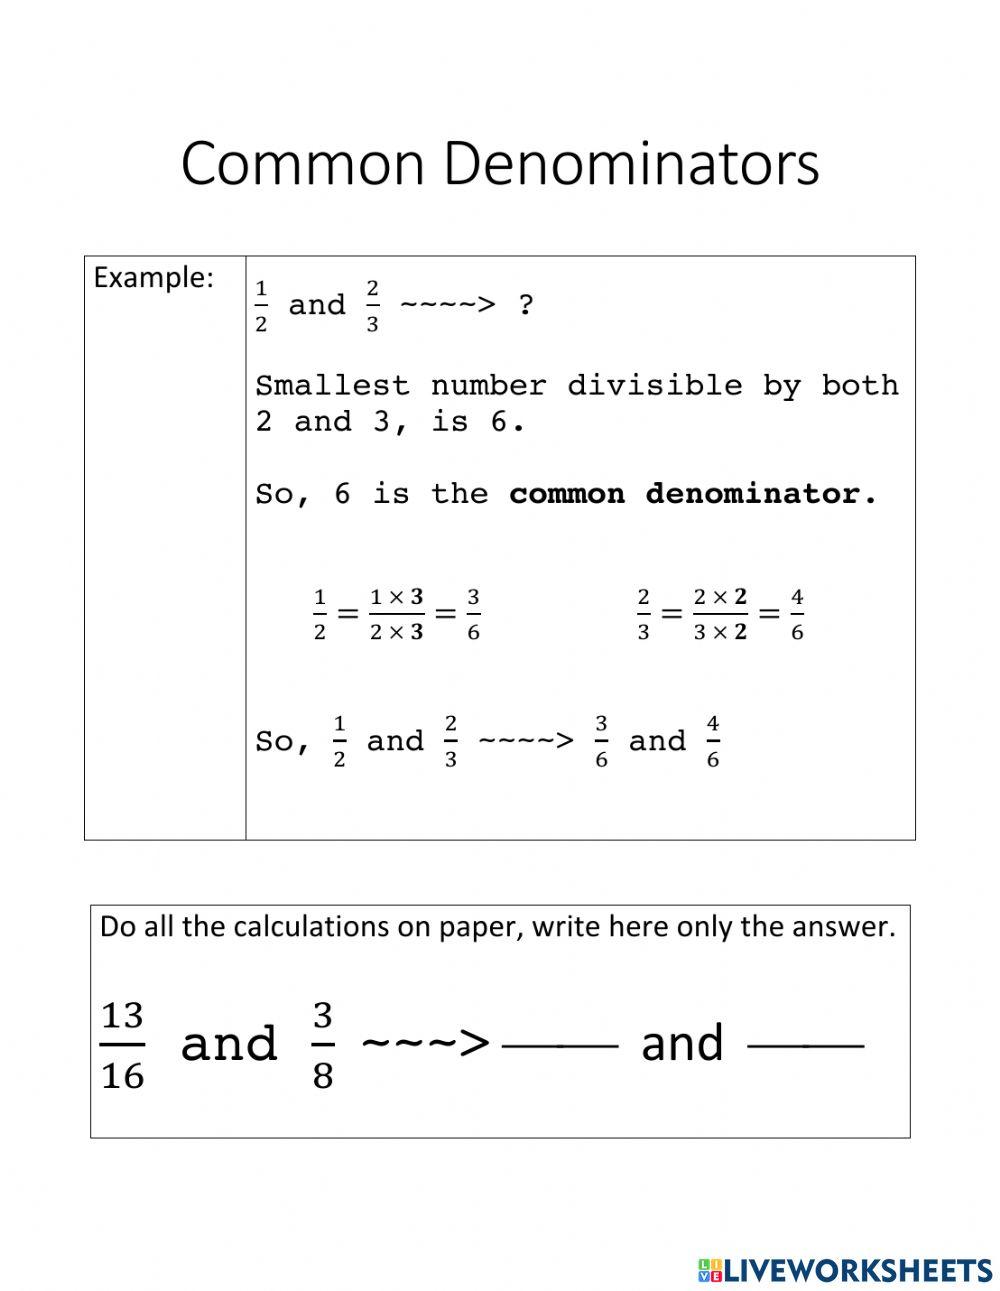 Common Denominators - 3